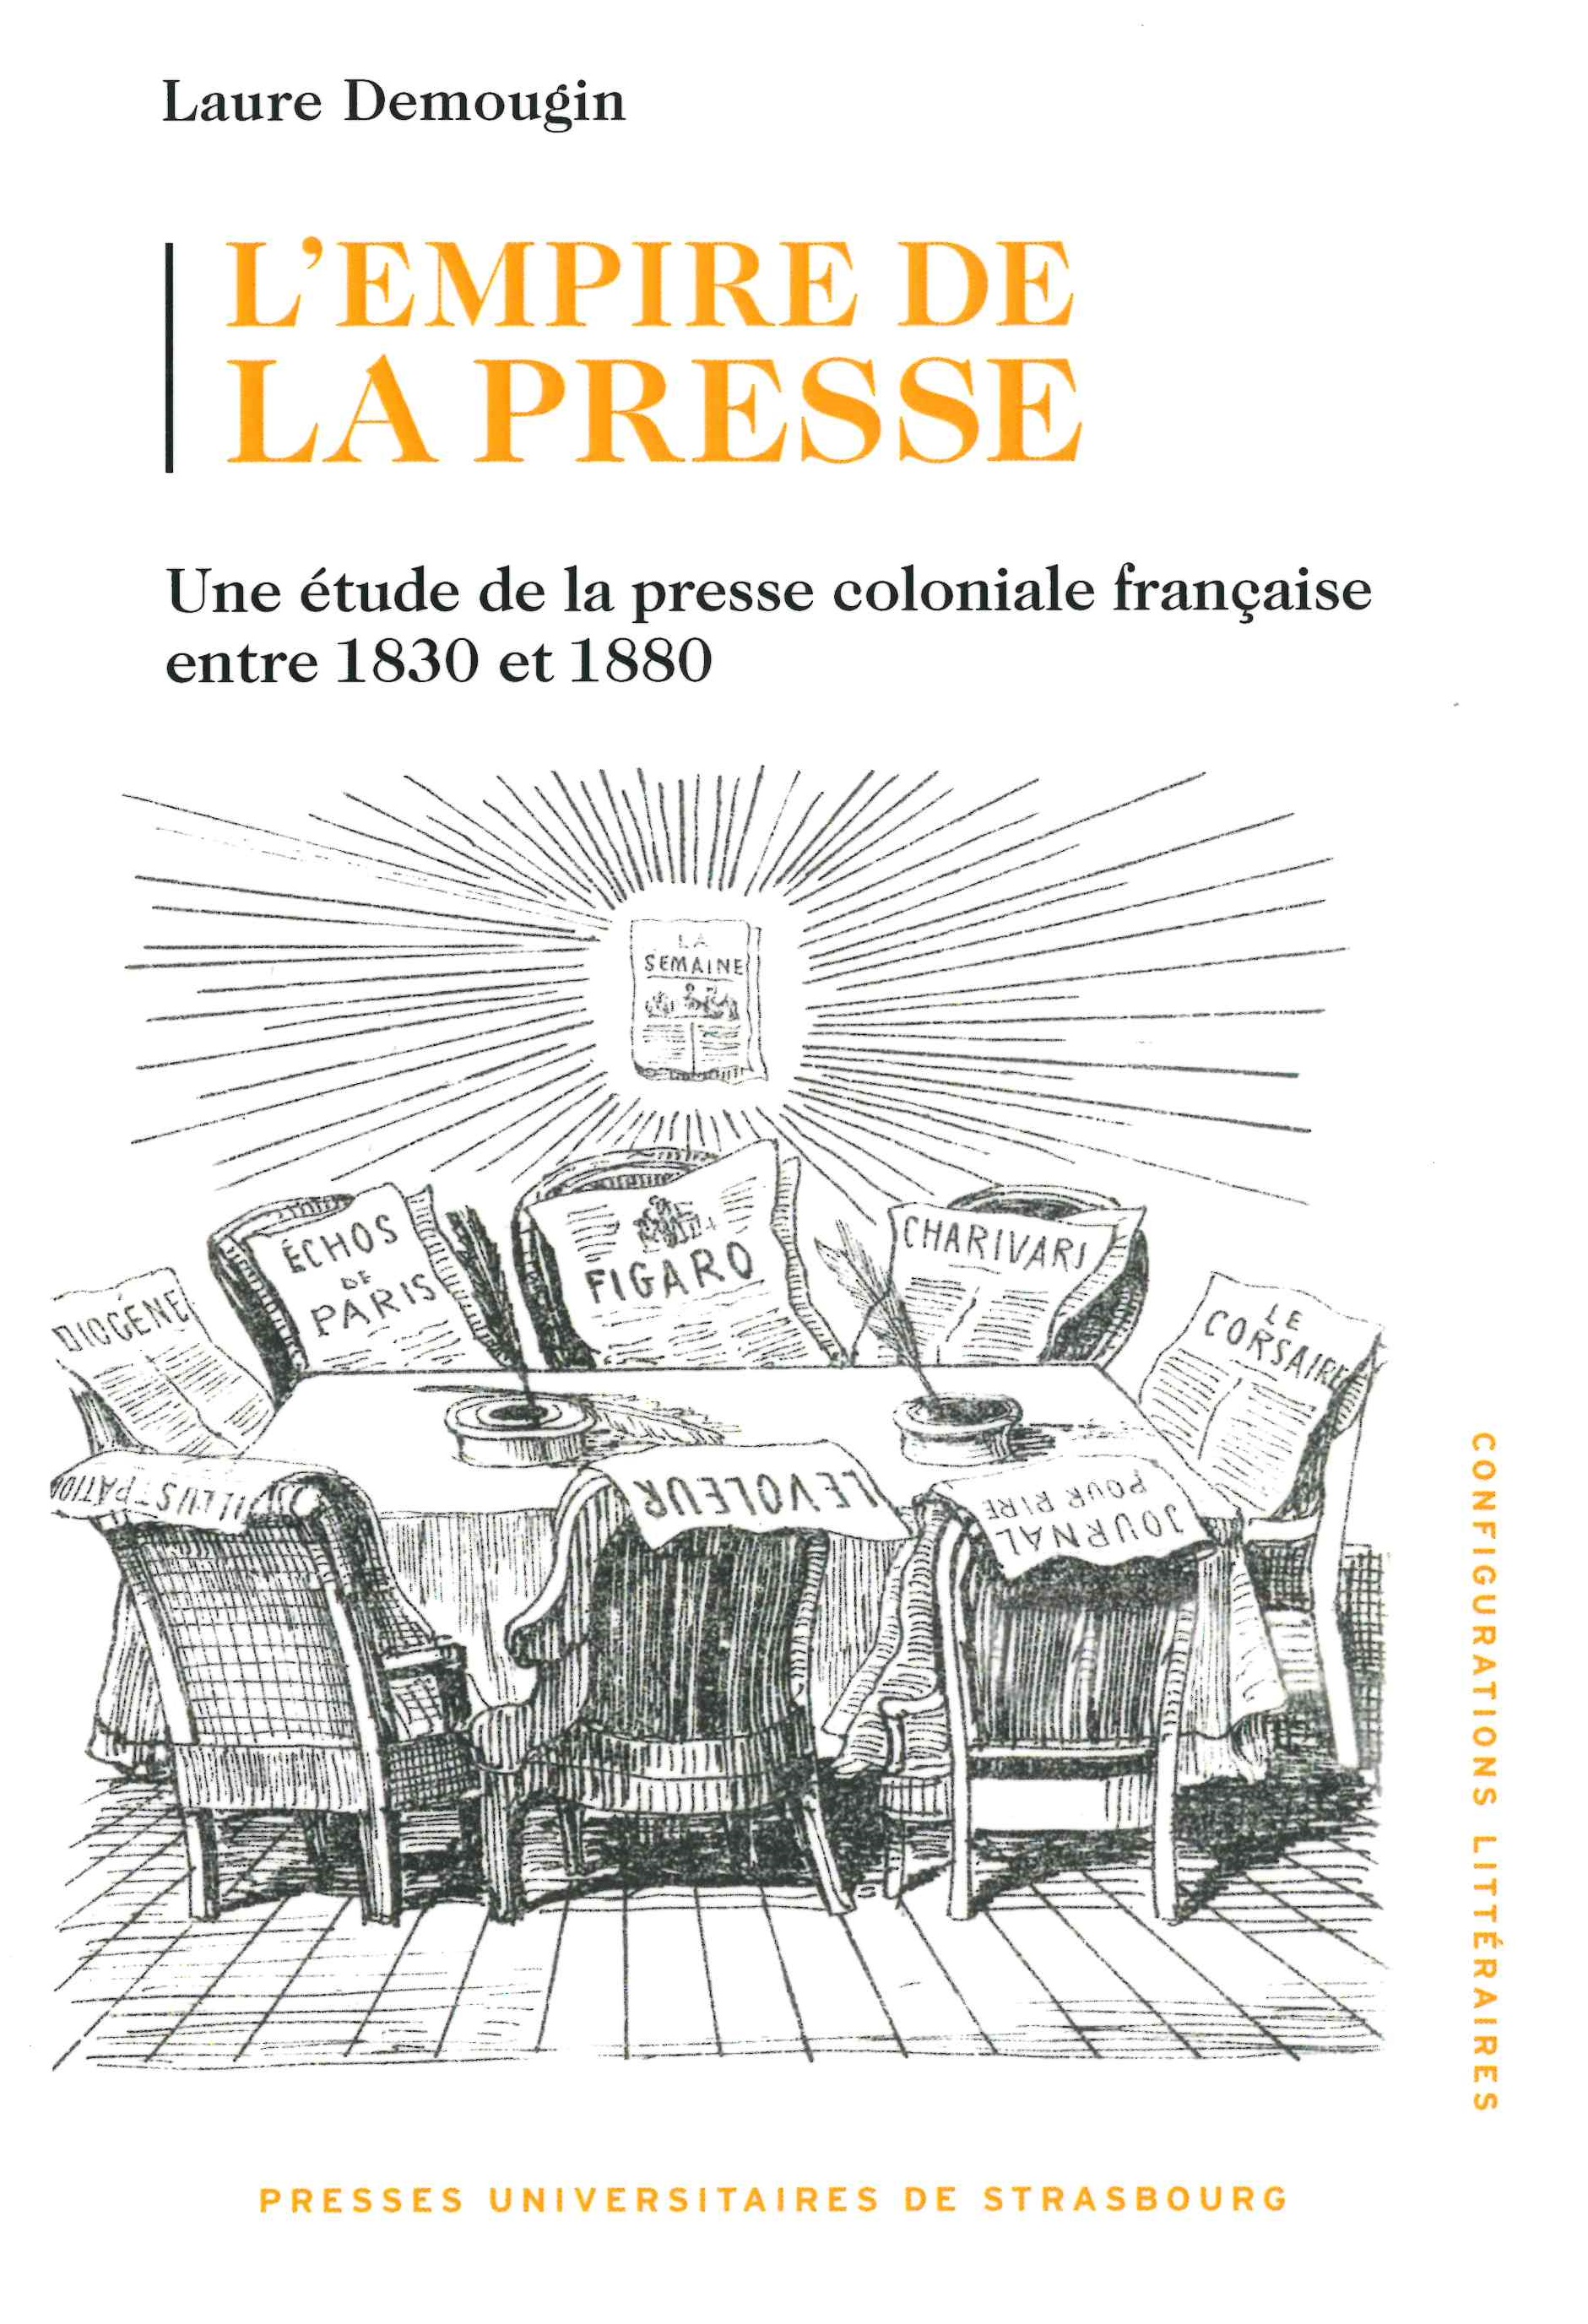 Demougin (Laure), L’empire de la presse. Une étude de la presse coloniale française entre 1830 et 1880